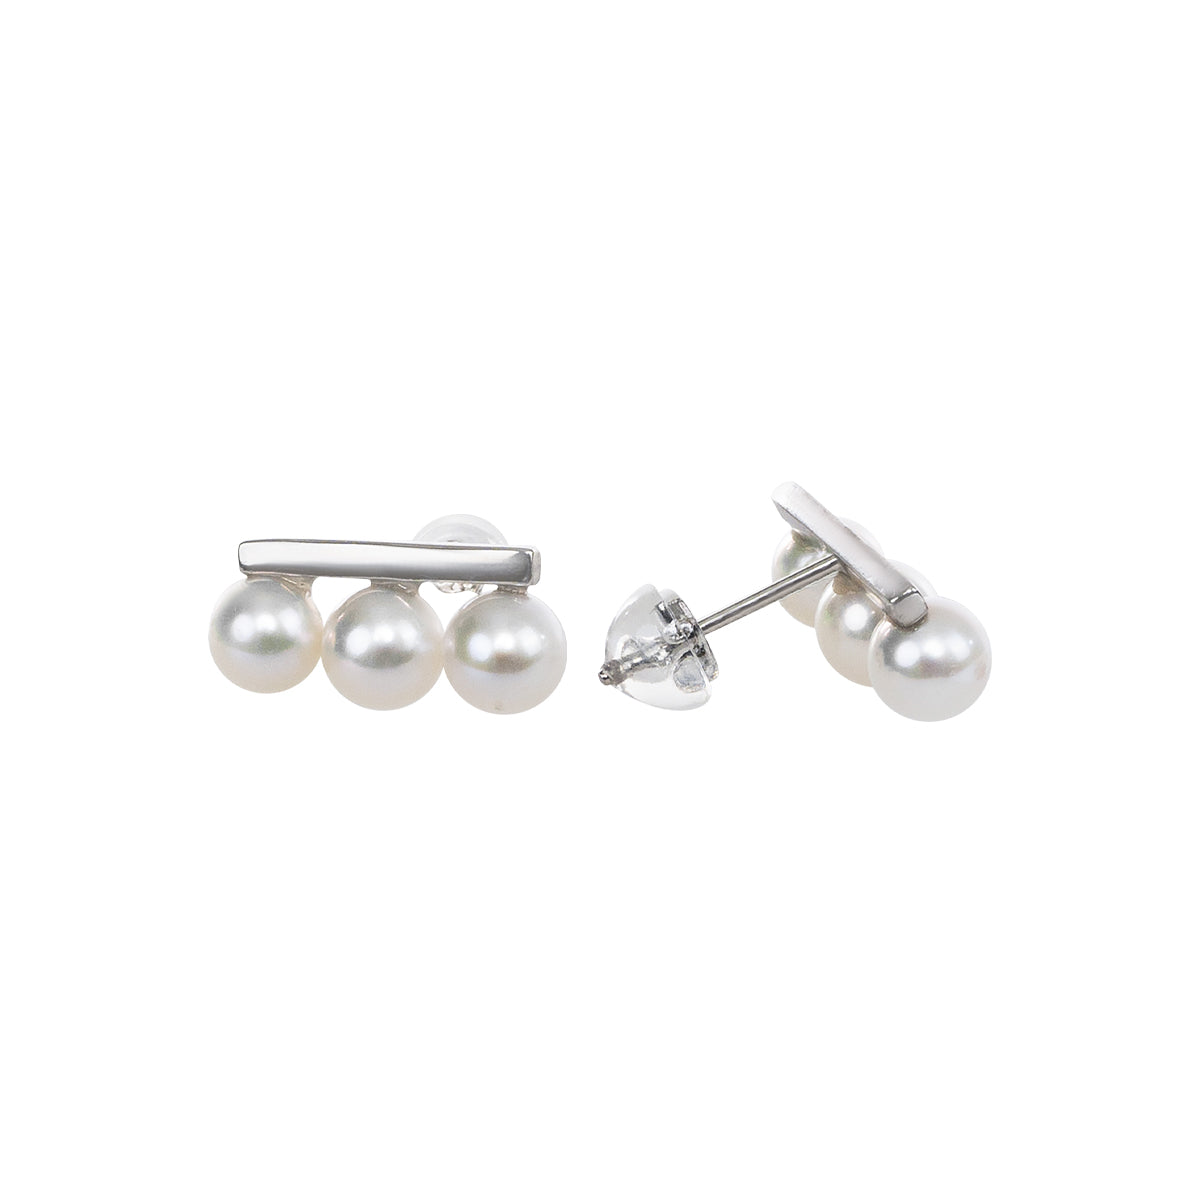 【#606】5-6mm Pearls Earrings